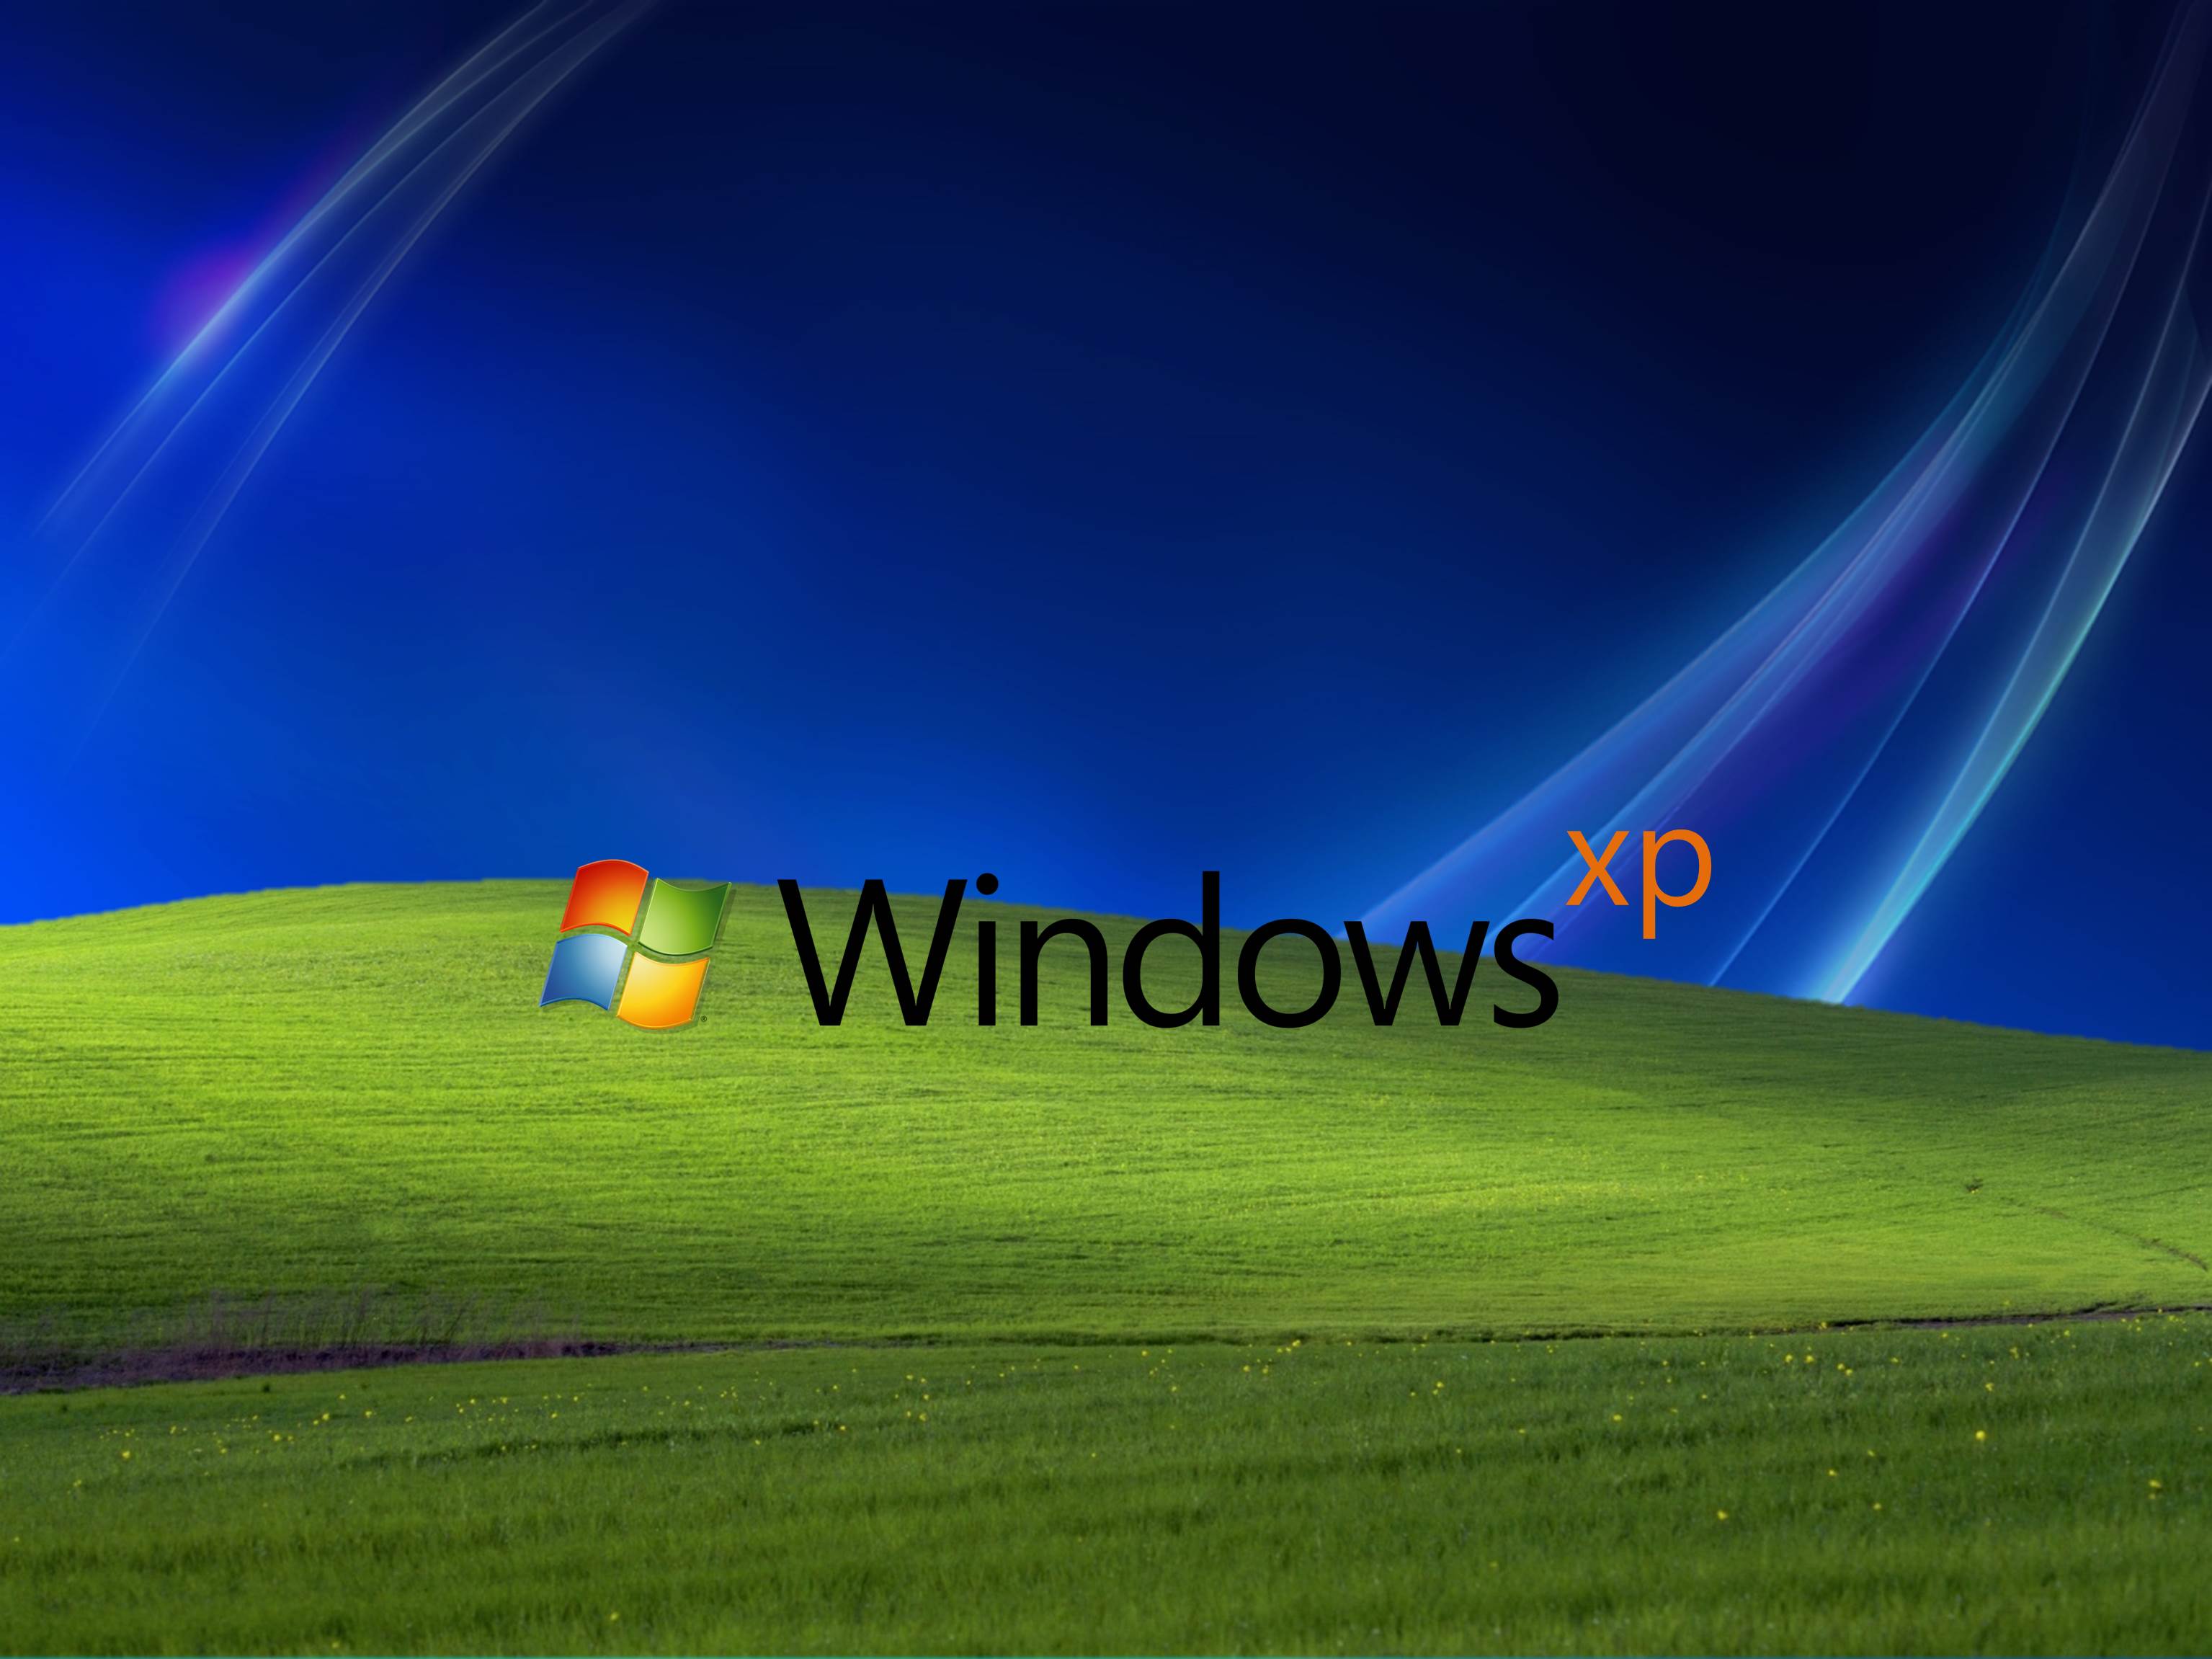 Fonds d&;écran Windows Xp, tous les wallpaper Windows Xp